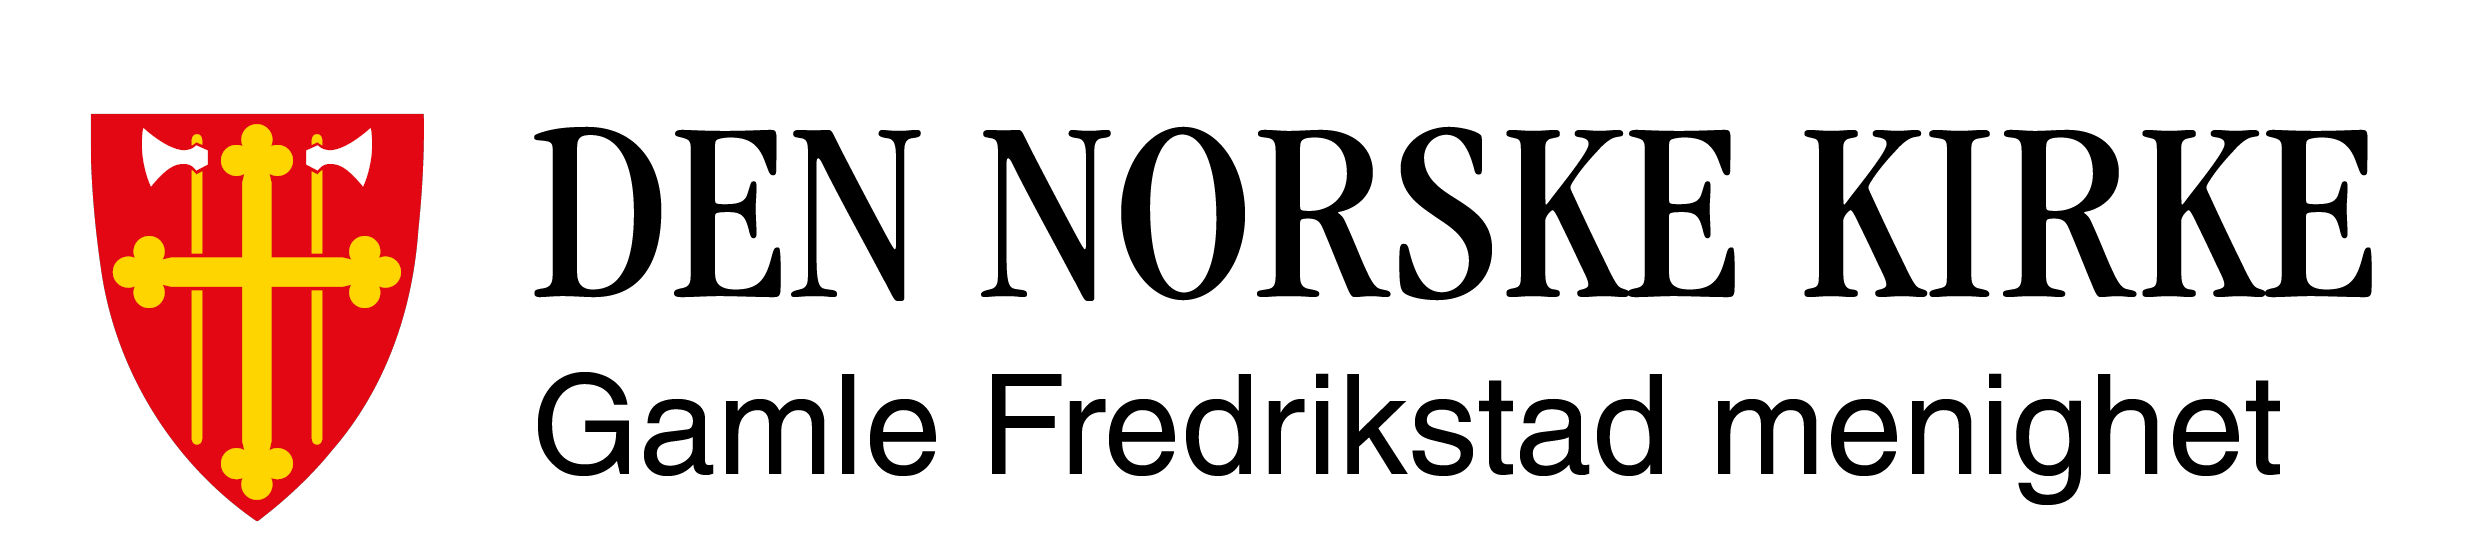 Gamle Fredrikstad menighet logo